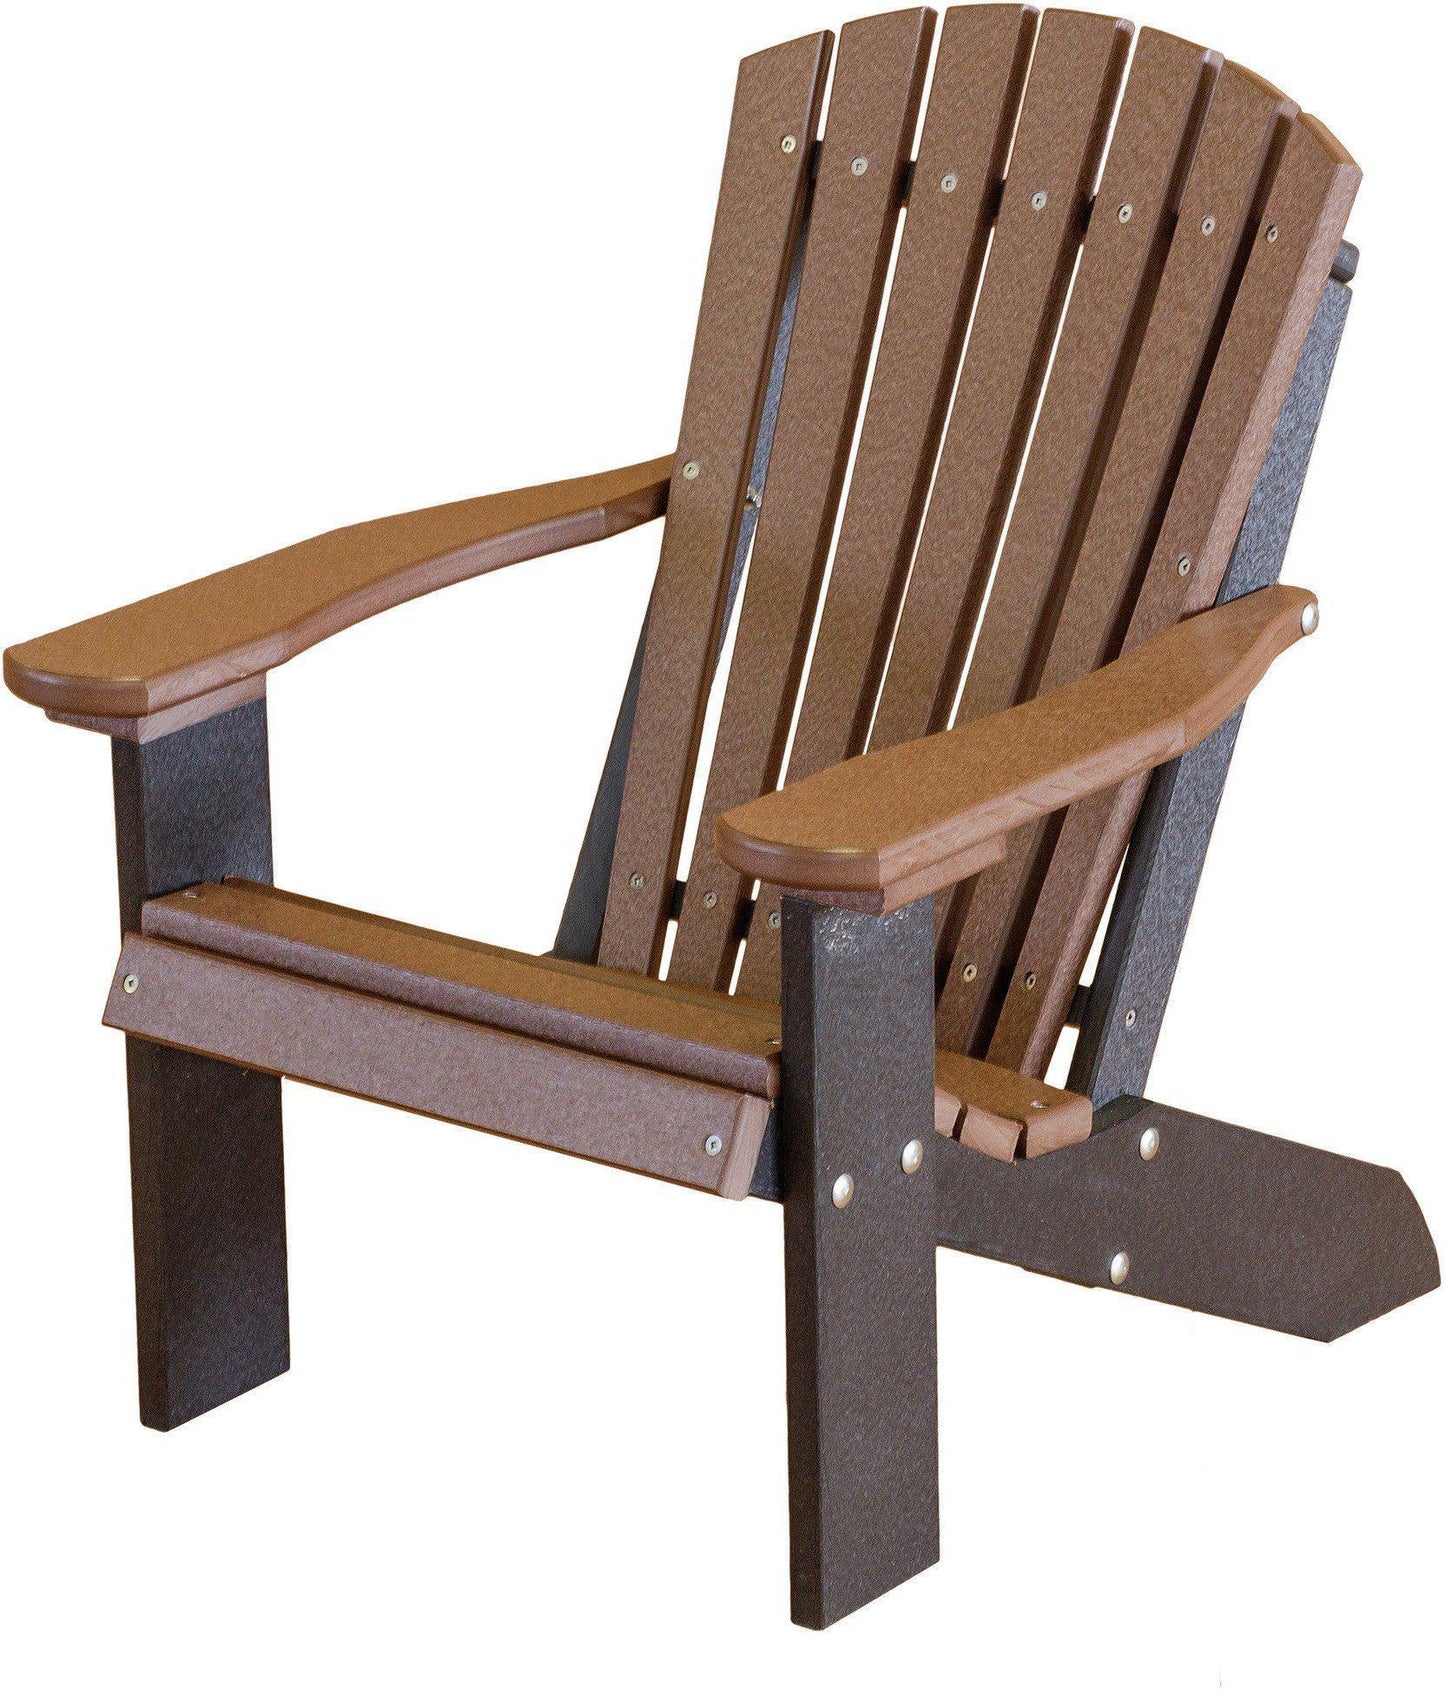 Adirondack Chair - Wildridge Recycled Plastic Children's Adirondack Chair